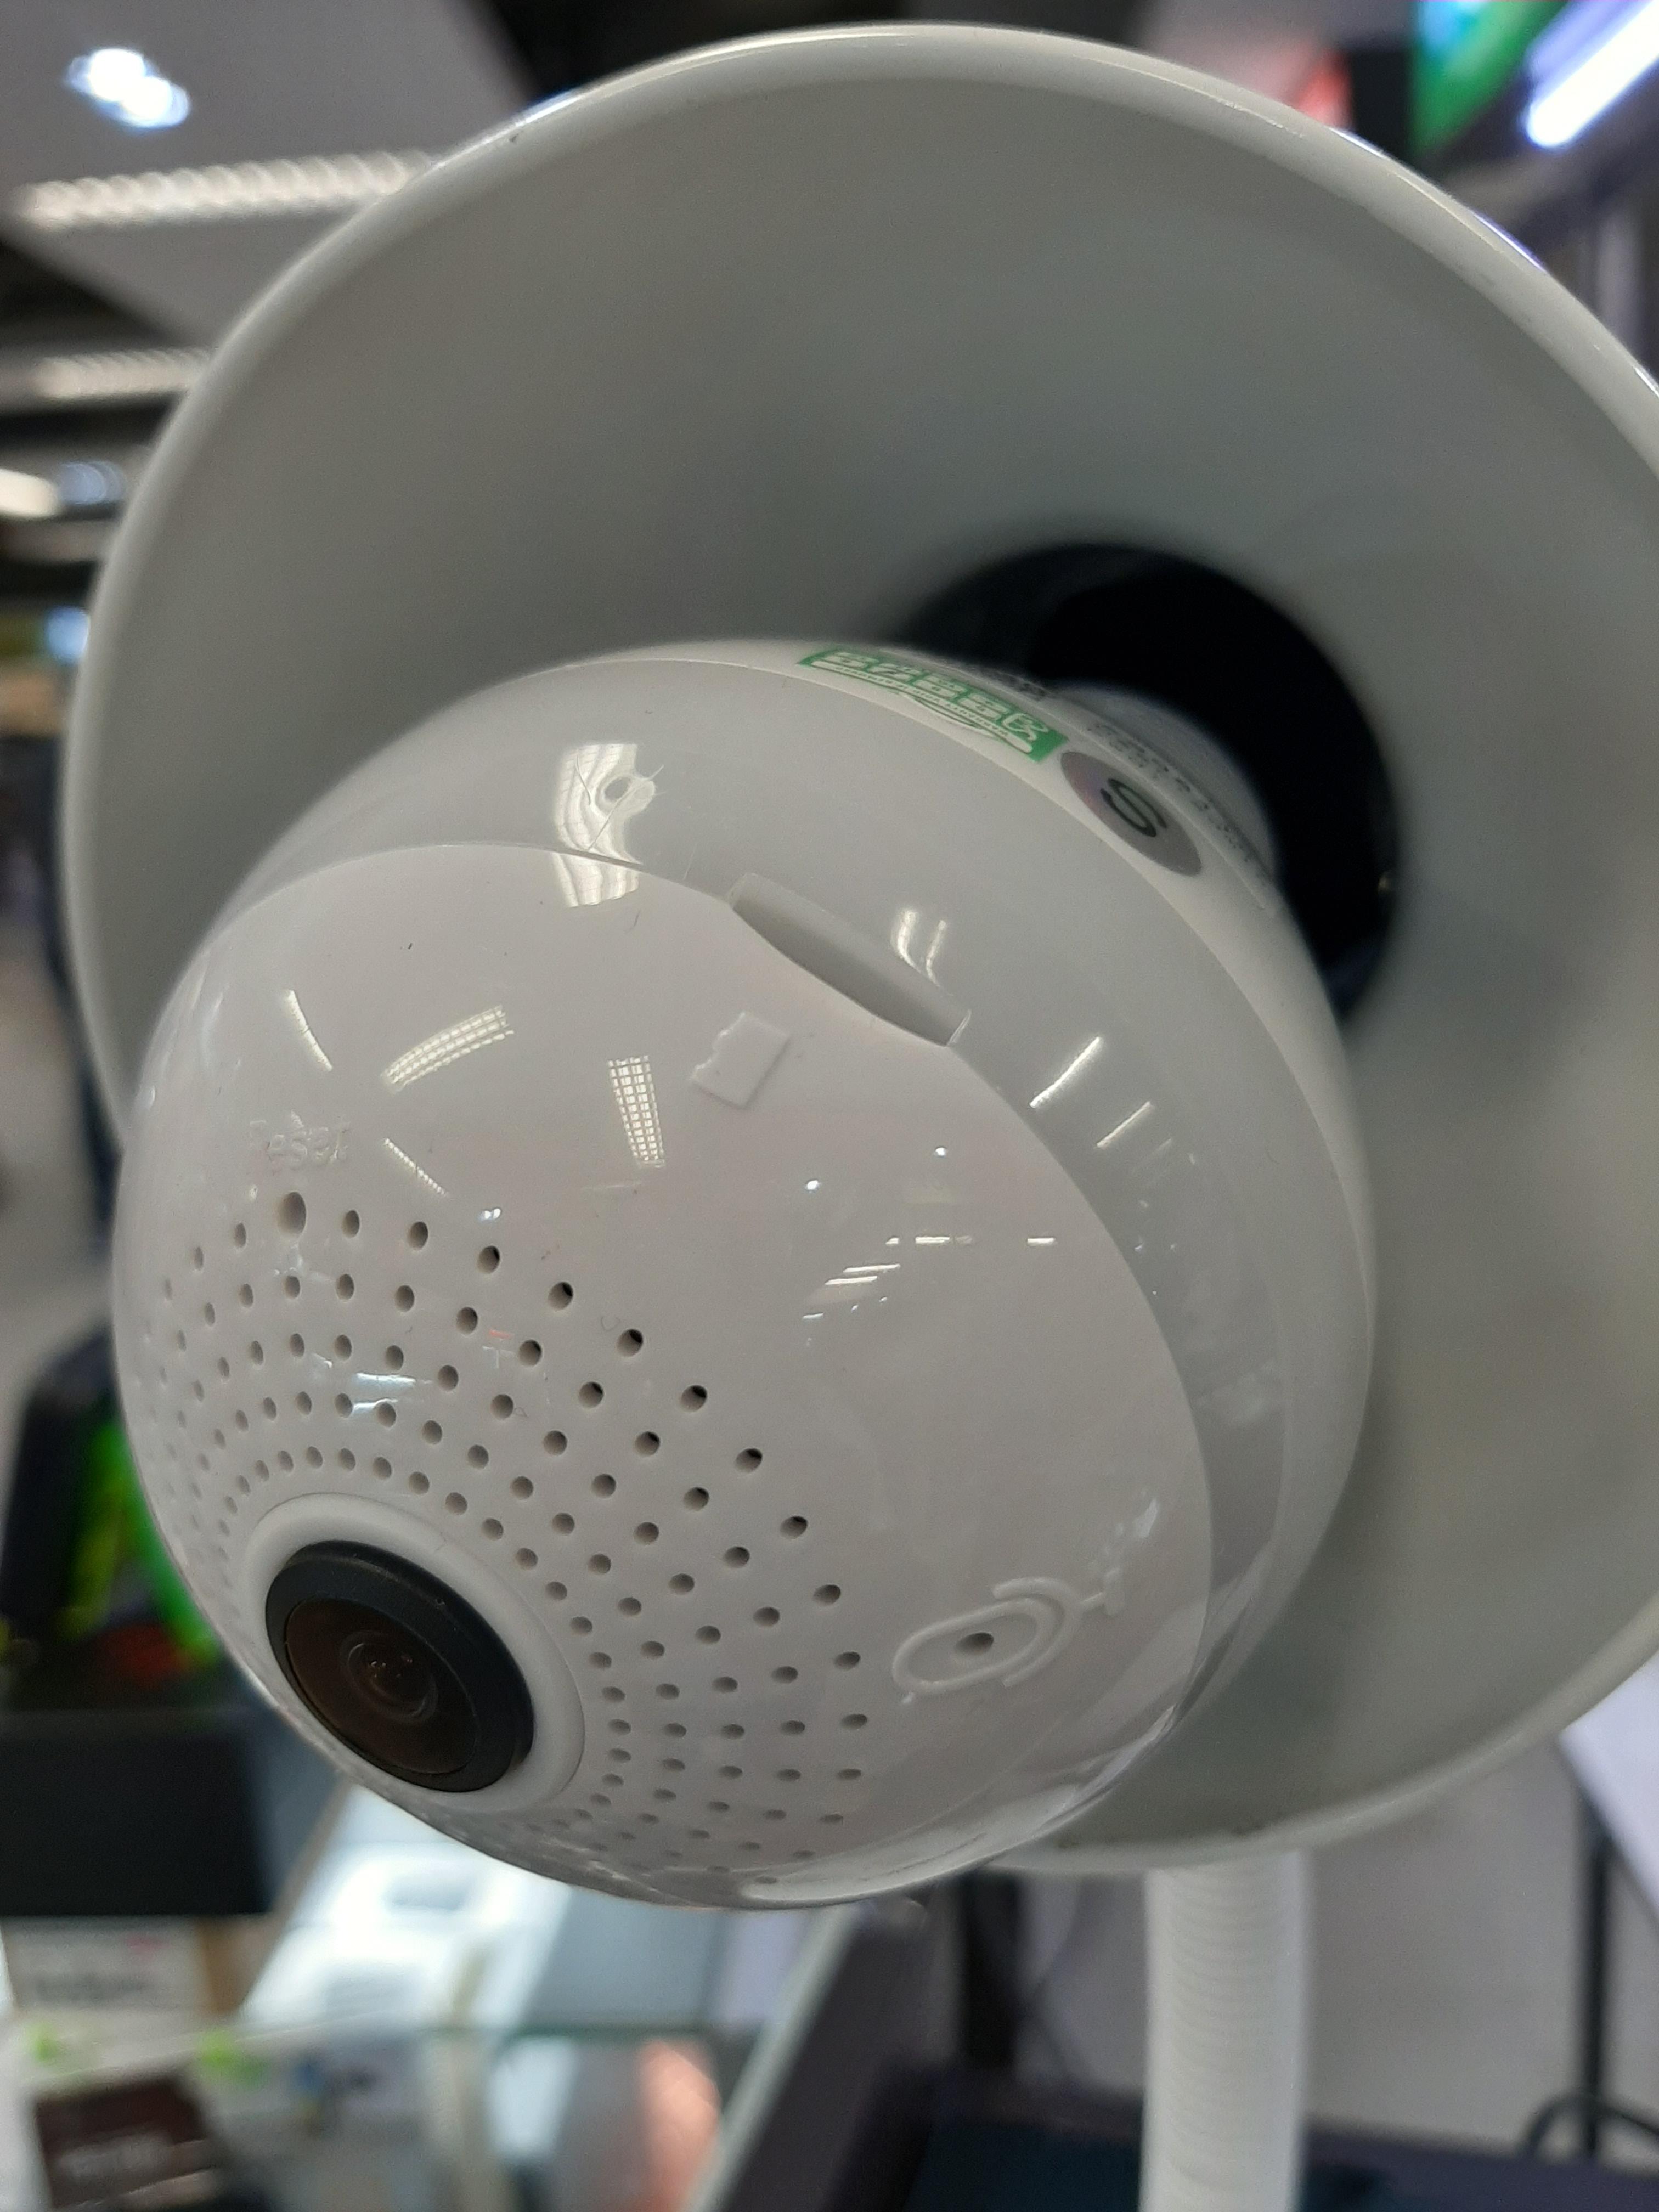 กล้องรักษาความปลอดภัย หลอดไฟ วงจรปิดกล้อง หลอดไฟของแท้ Bulb wifi camera กล้องหยอดไฟ ติดแทนไฟบ้านได้เลย เกลียวมาตรฐาน E27